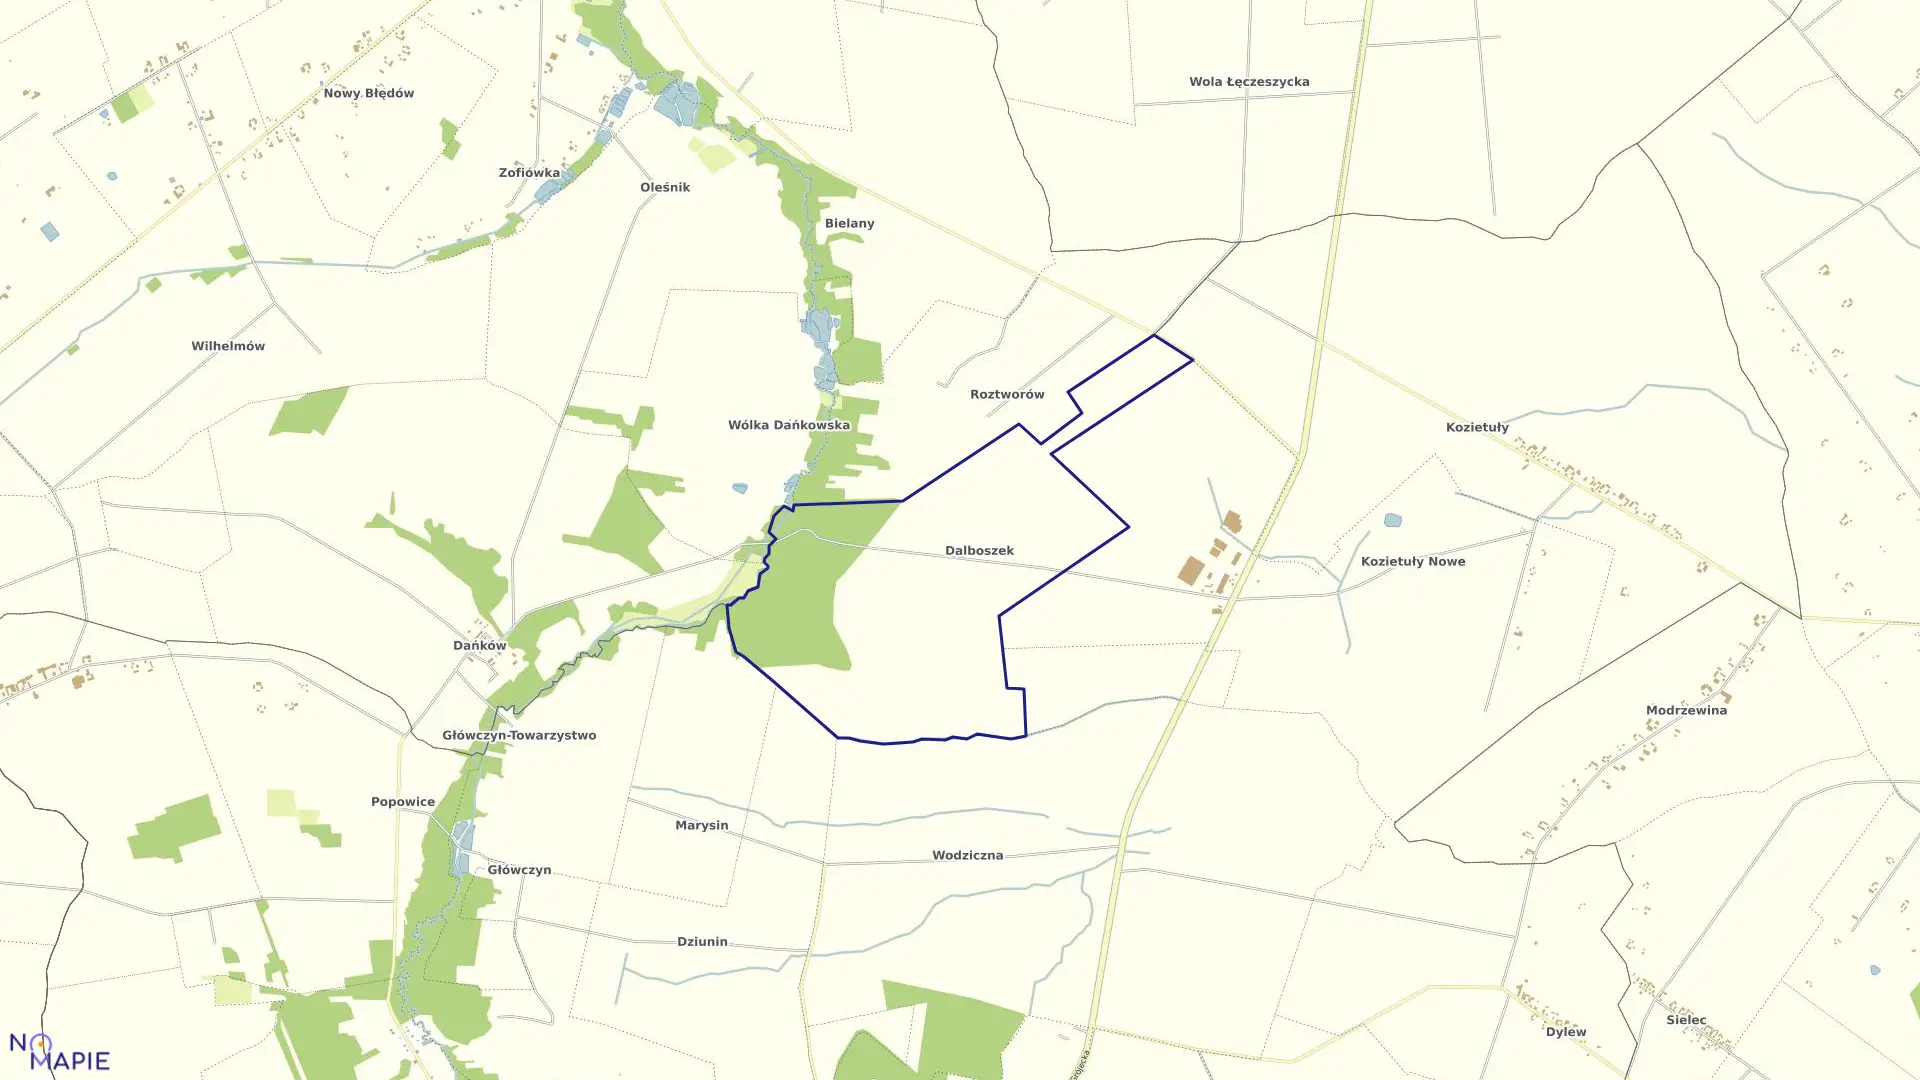 Mapa obrębu DALBOSZEK w gminie Mogielnica